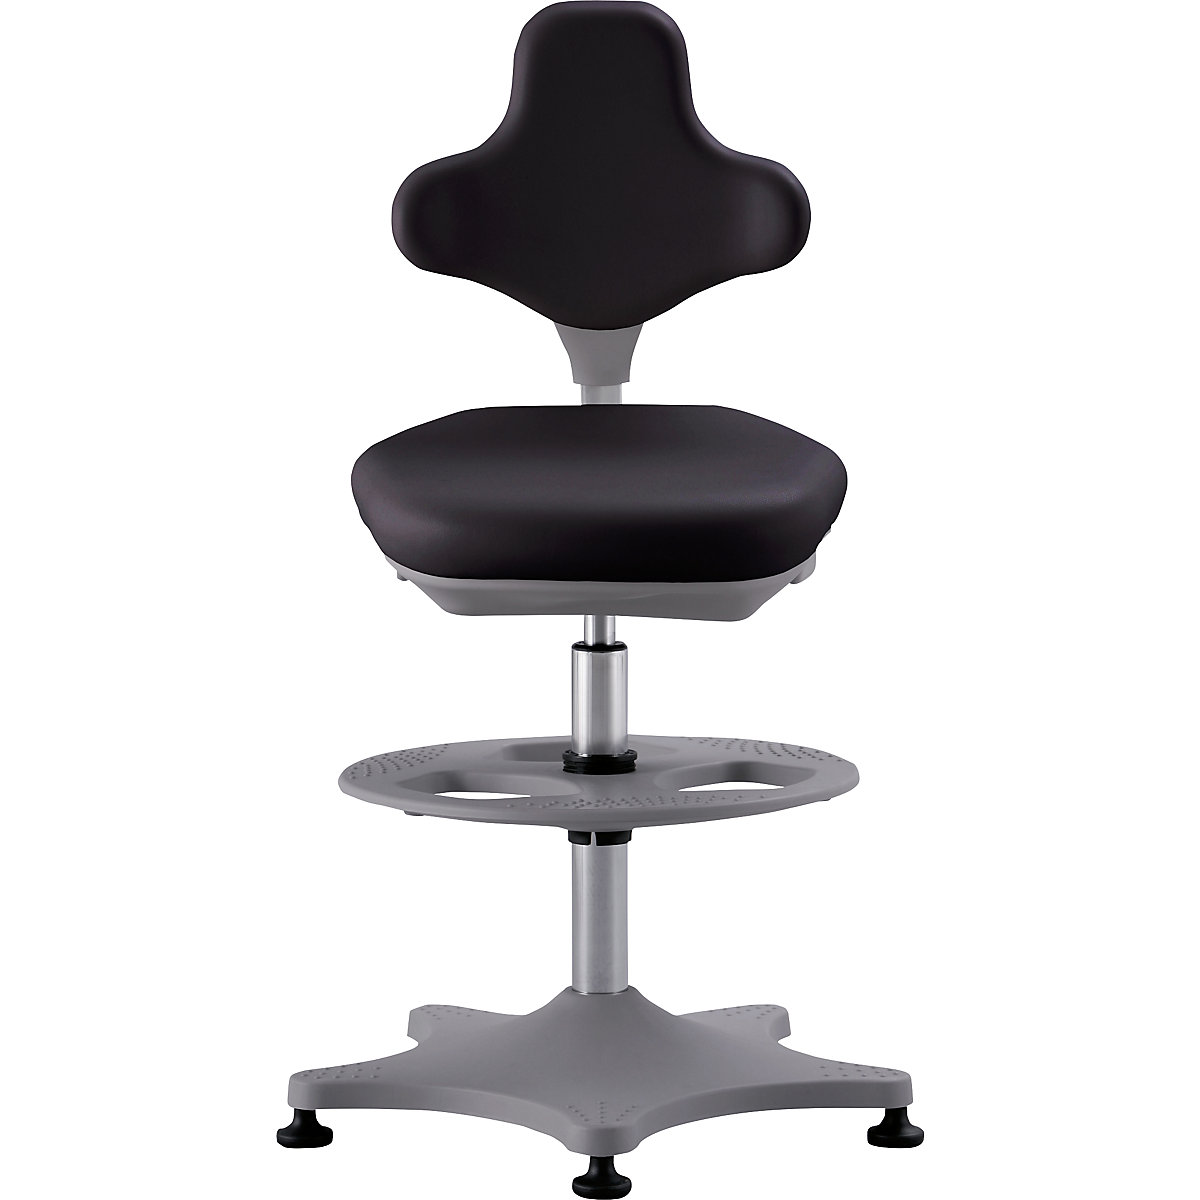 Laboratórna pracovná otočná stolička LABSTER – bimos, rozsah prestavenia výšky 550 – 800 mm, s podlahovými klzákmi a nožným kruhom, sedadlo z PU peny, čierna-3